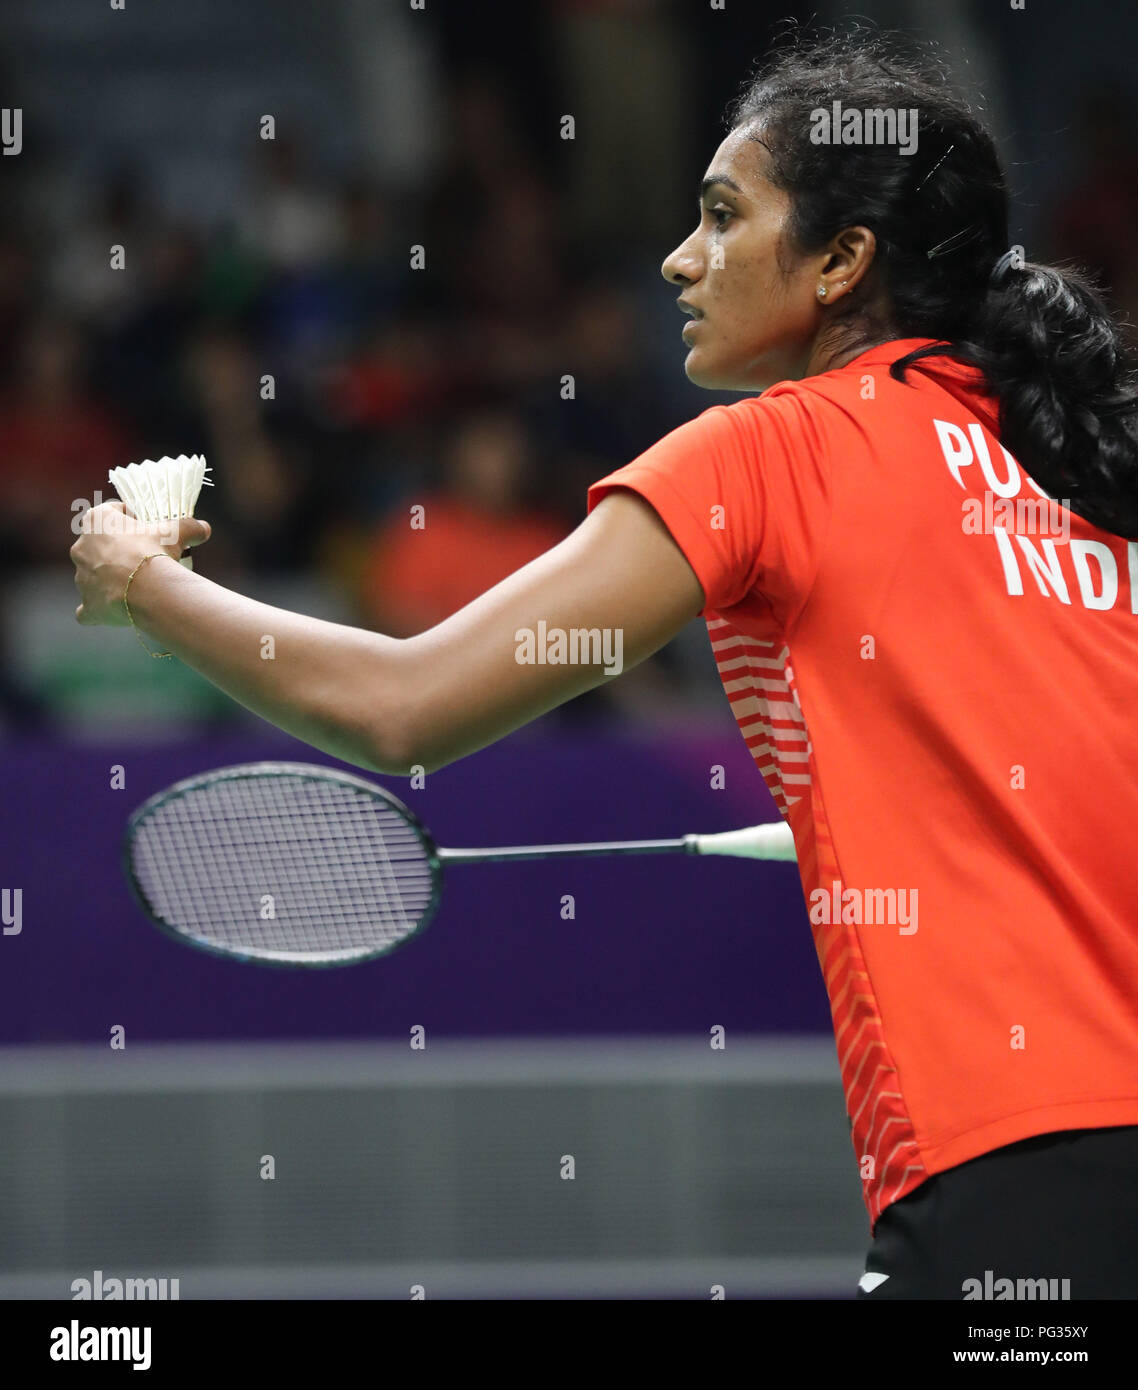 Jakarta, Indonésie, le 23 août 2018 : Badminton : l'étoile de l'Inde Shuttler PV Sindhu se prépare à l'envoyer SESHADRI SUKUMAR Crédit : Seshadri SUKUMAR/Alamy Live News Banque D'Images